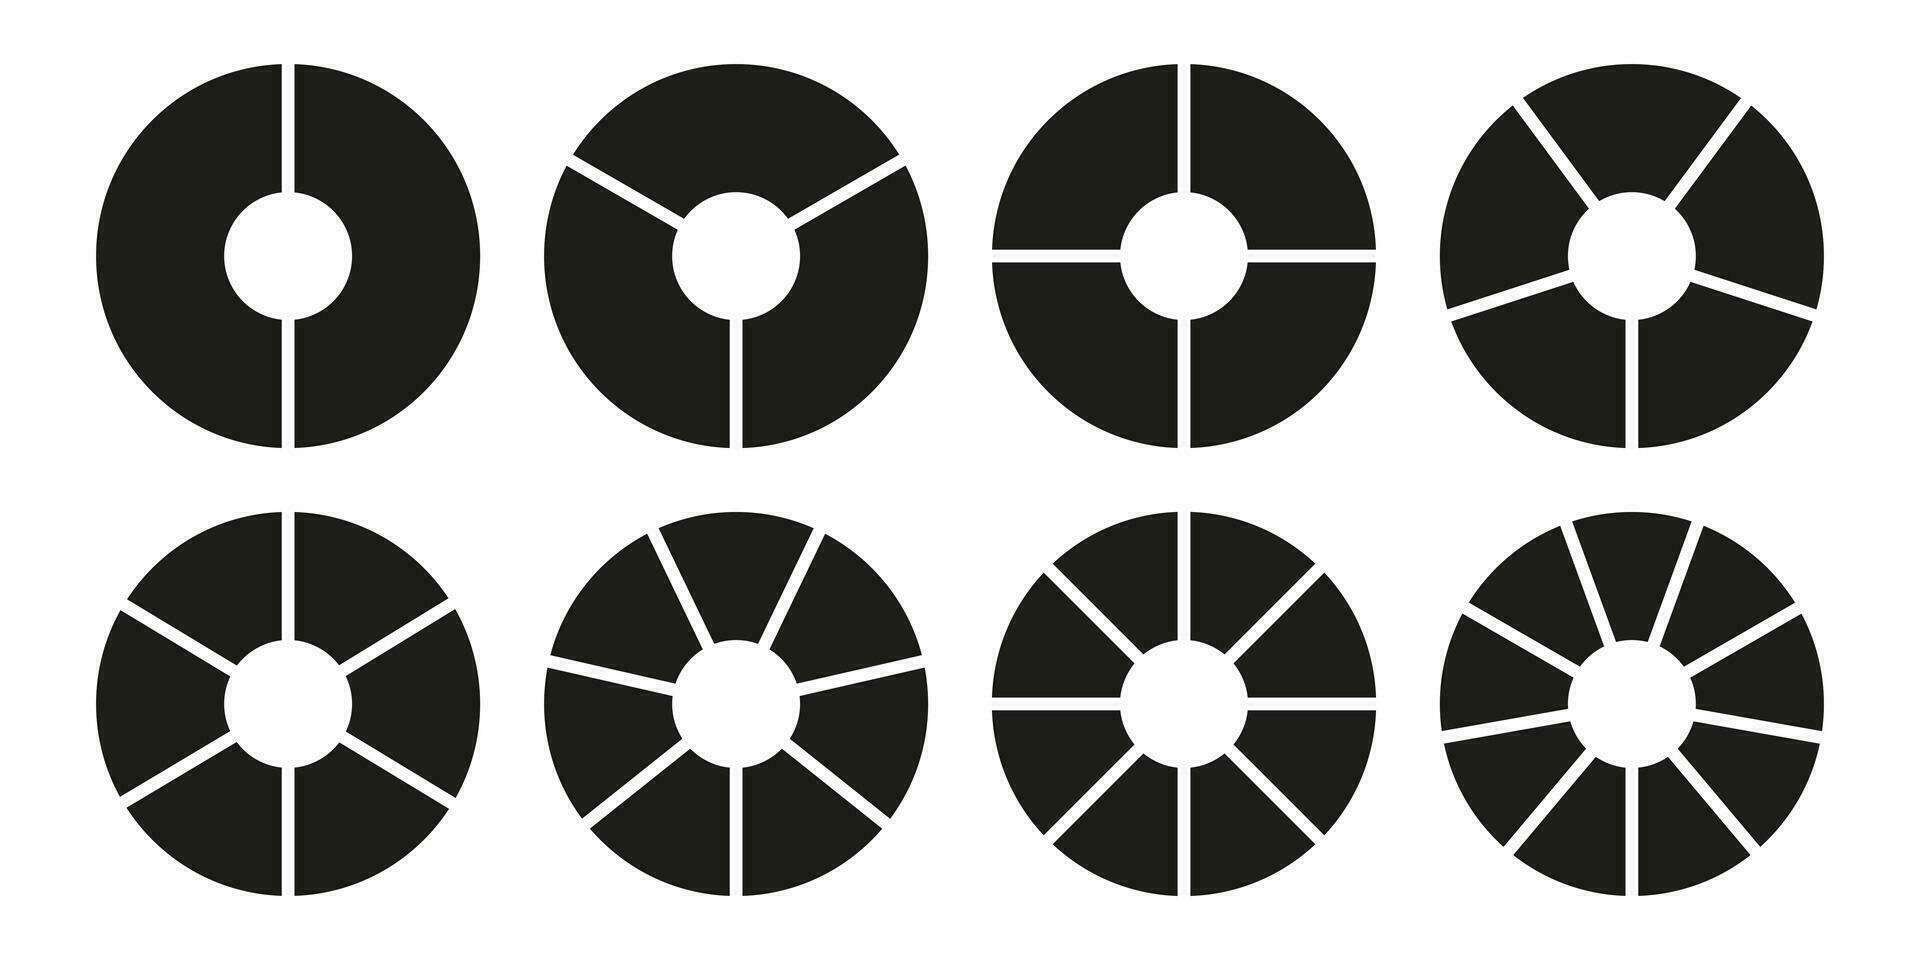 cercle division sur 2, 3, 4, 5, 6, 7, 8, 9 égal les pièces. infographie ensemble. roue rond divisé diagrammes avec deux, trois, quatre, cinq, six, Sept, huit, neuf segments. Donut graphiques, tartes. vecteur graphique.